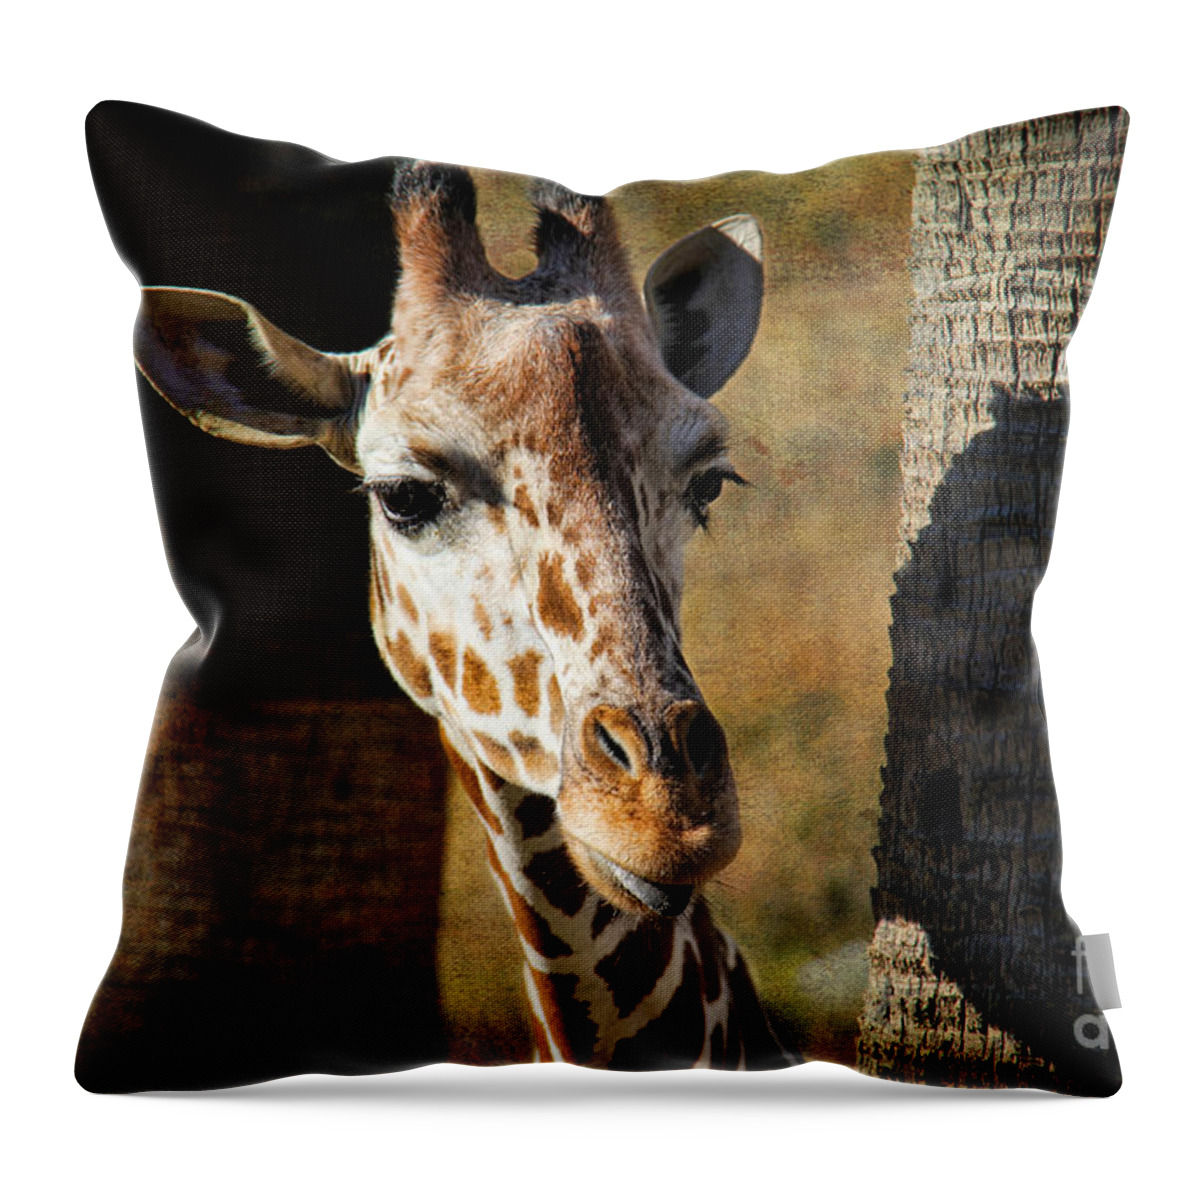 Peekaboo Giraffe Throw Pillow featuring the photograph Peekaboo Giraffe by Mariola Bitner